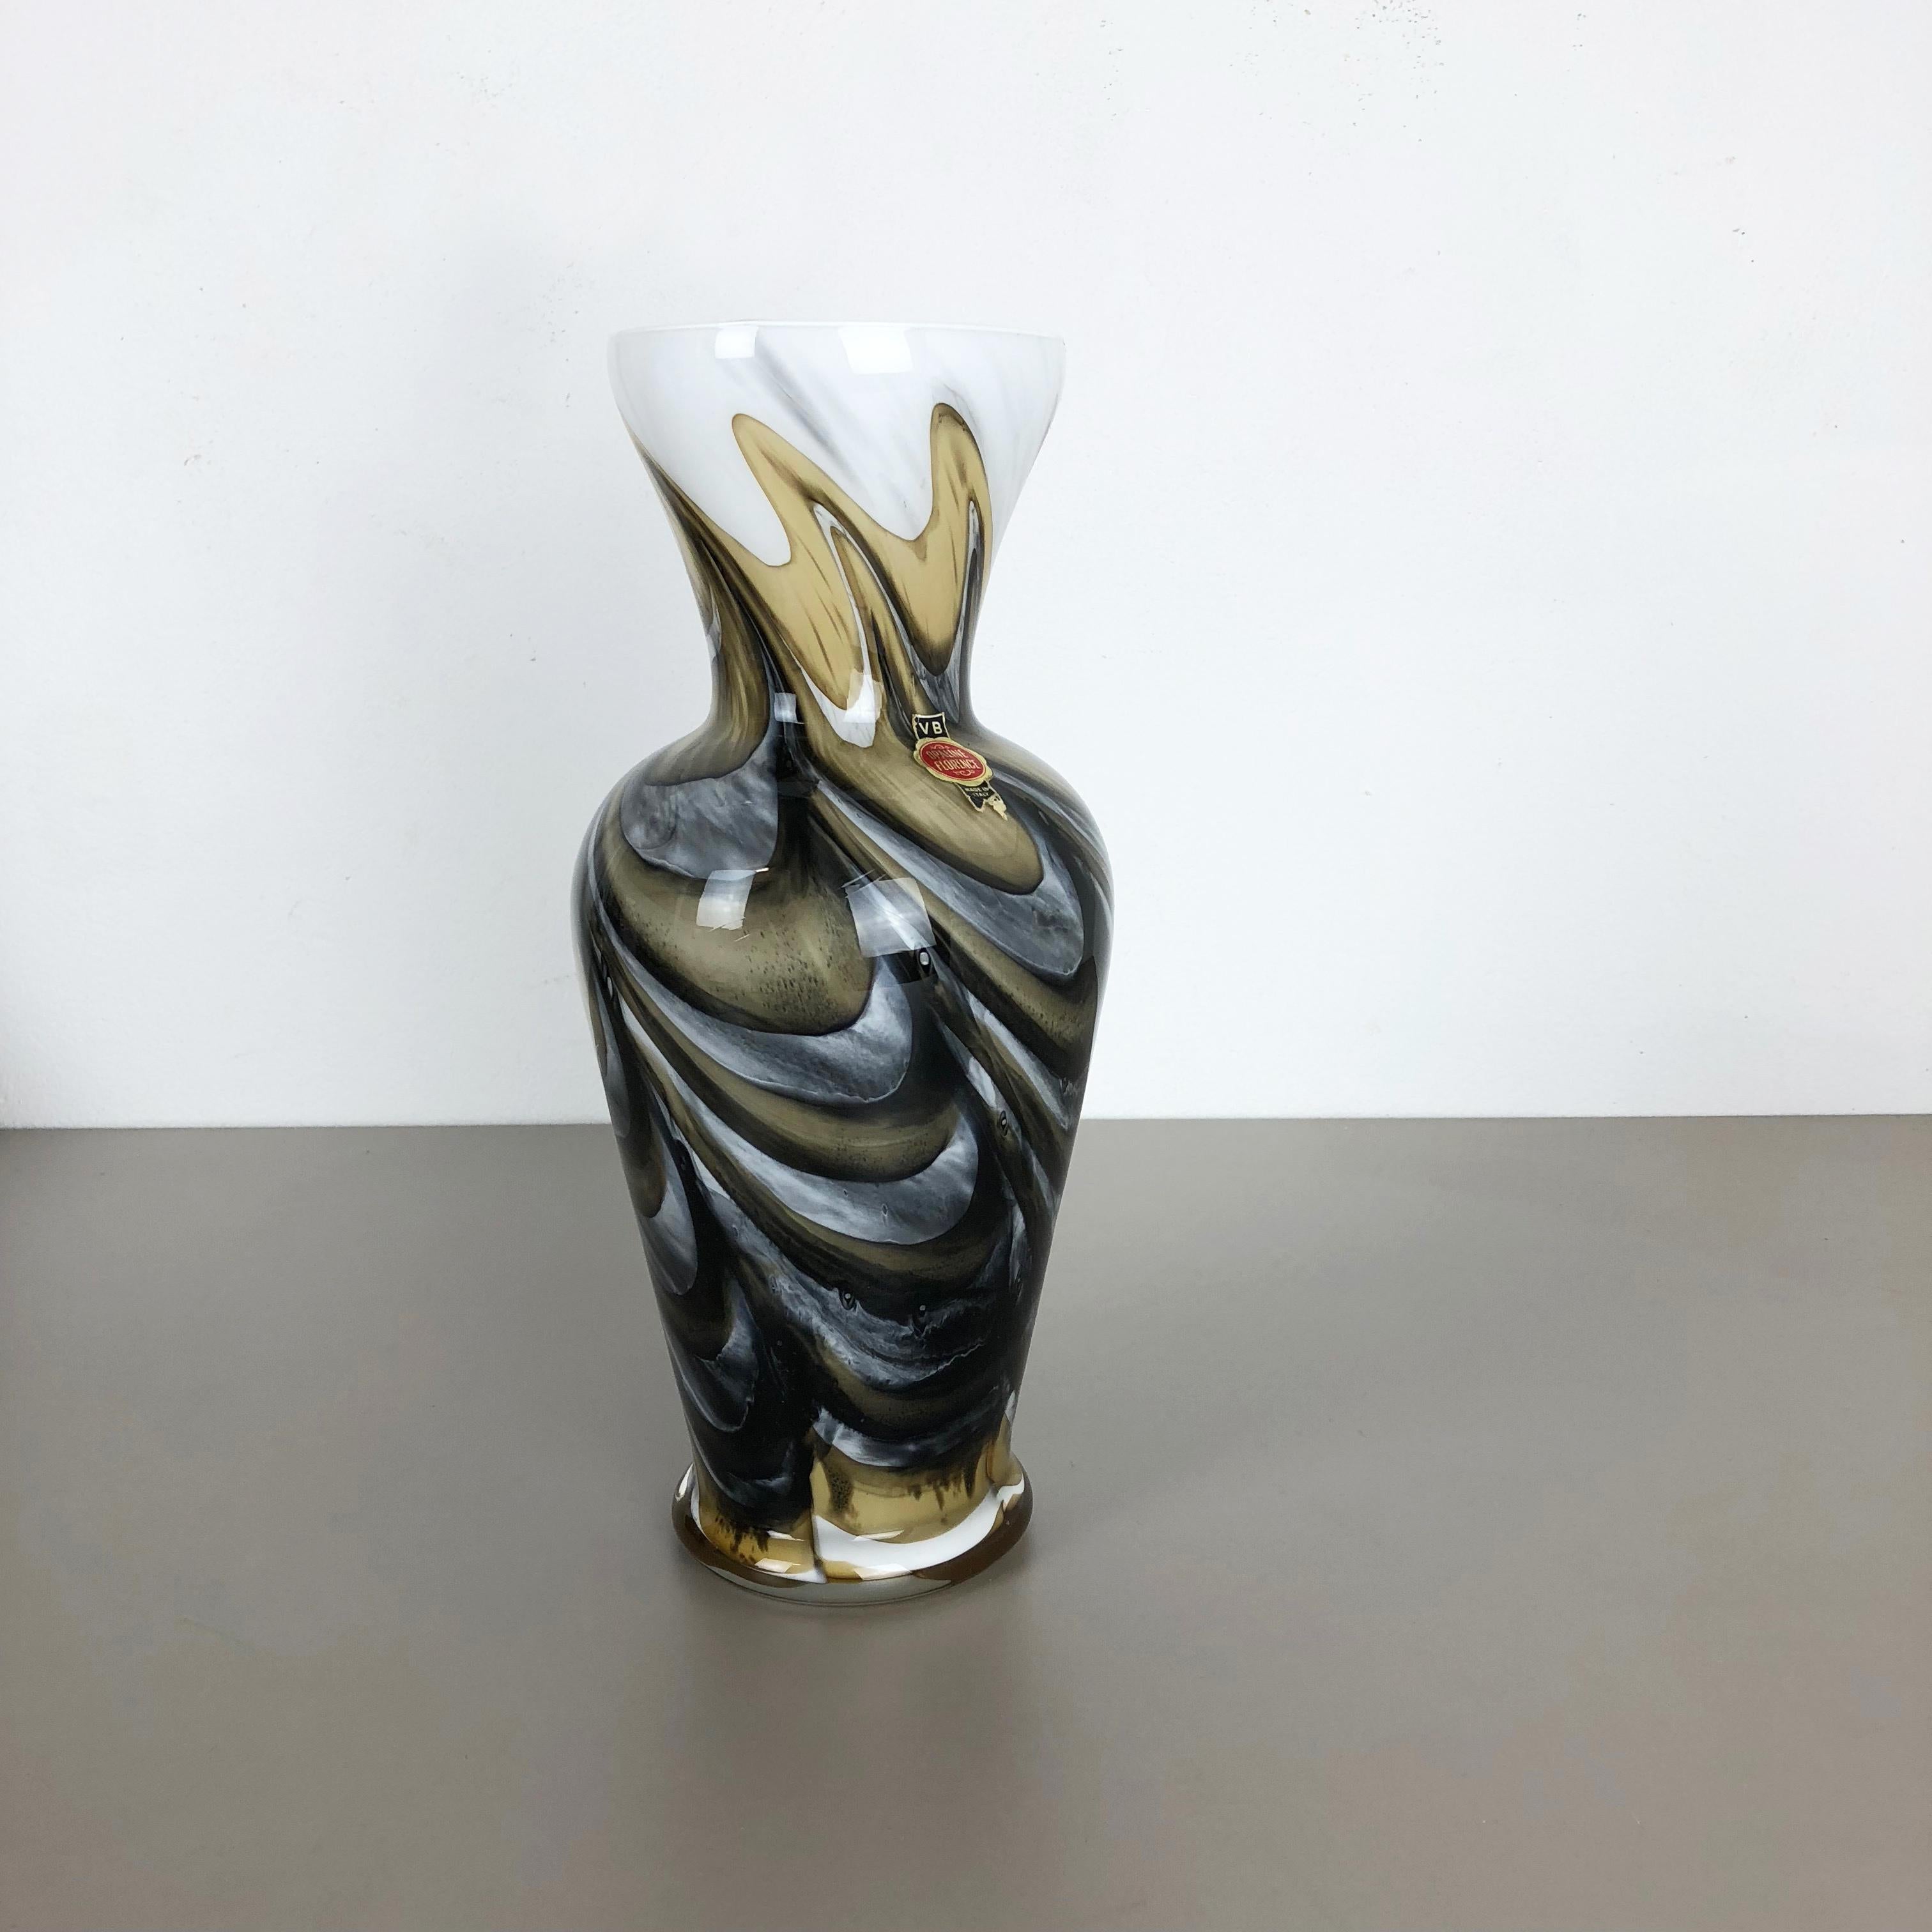 Artikel:

Pop-Art-Vase


Produzent:

Opalin Florenz



Jahrzehnt:

1970s


Beschreibung:

Originale mundgeblasene Pop-Art-Vase aus den 1970er Jahren, hergestellt in Italien von Opaline Florenz. aus hochwertigem italienischem